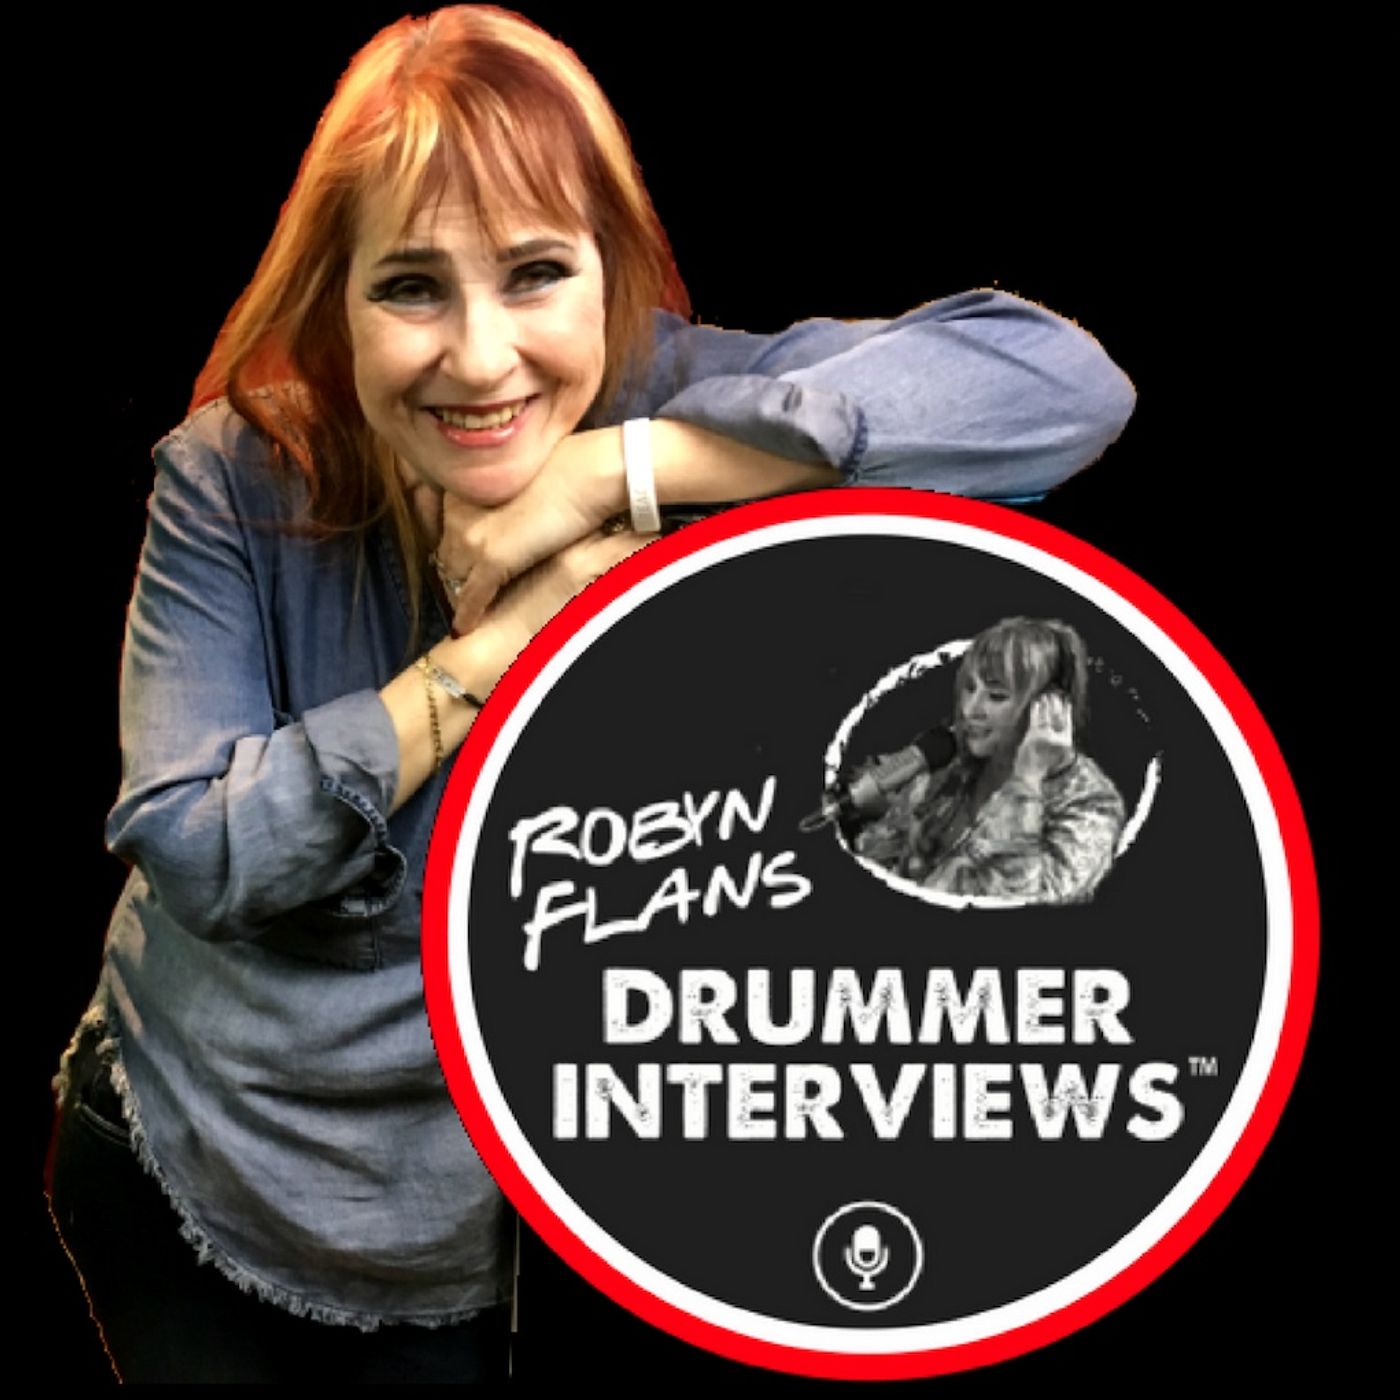 Robyn Flans Drummer Interviews